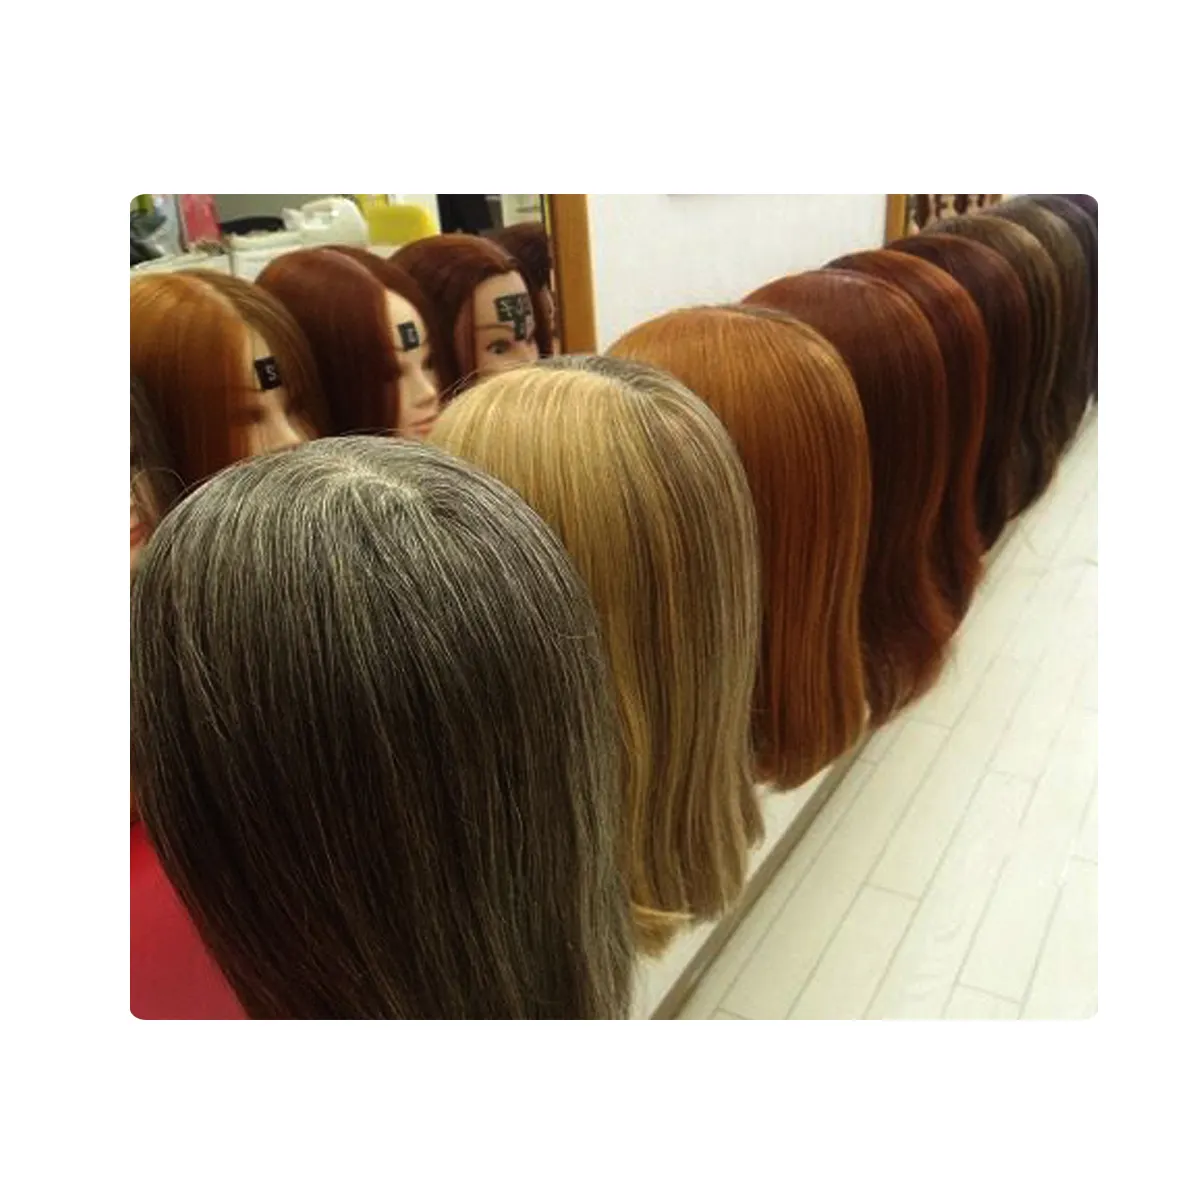 Натуральные цвета волос от производителя, Собственная Марка OEM, без побочных эффектов, лучшие травяные смешанные продукты для волос высшего качества, форма порошка